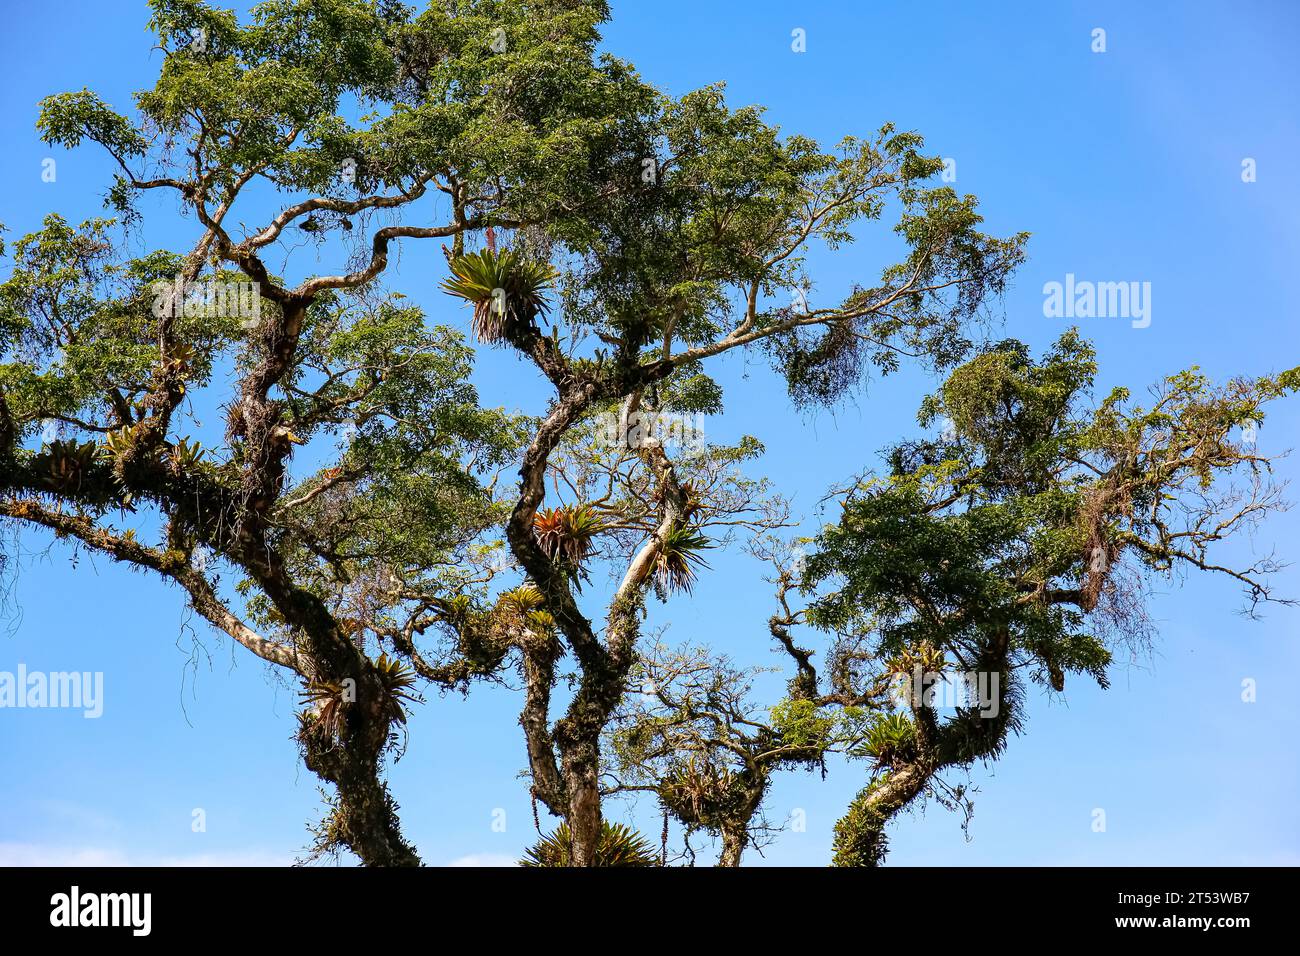 Impressionante corona di alberi contro il cielo blu, Itatiaia, Rio de Janeiro, Brasile Foto Stock